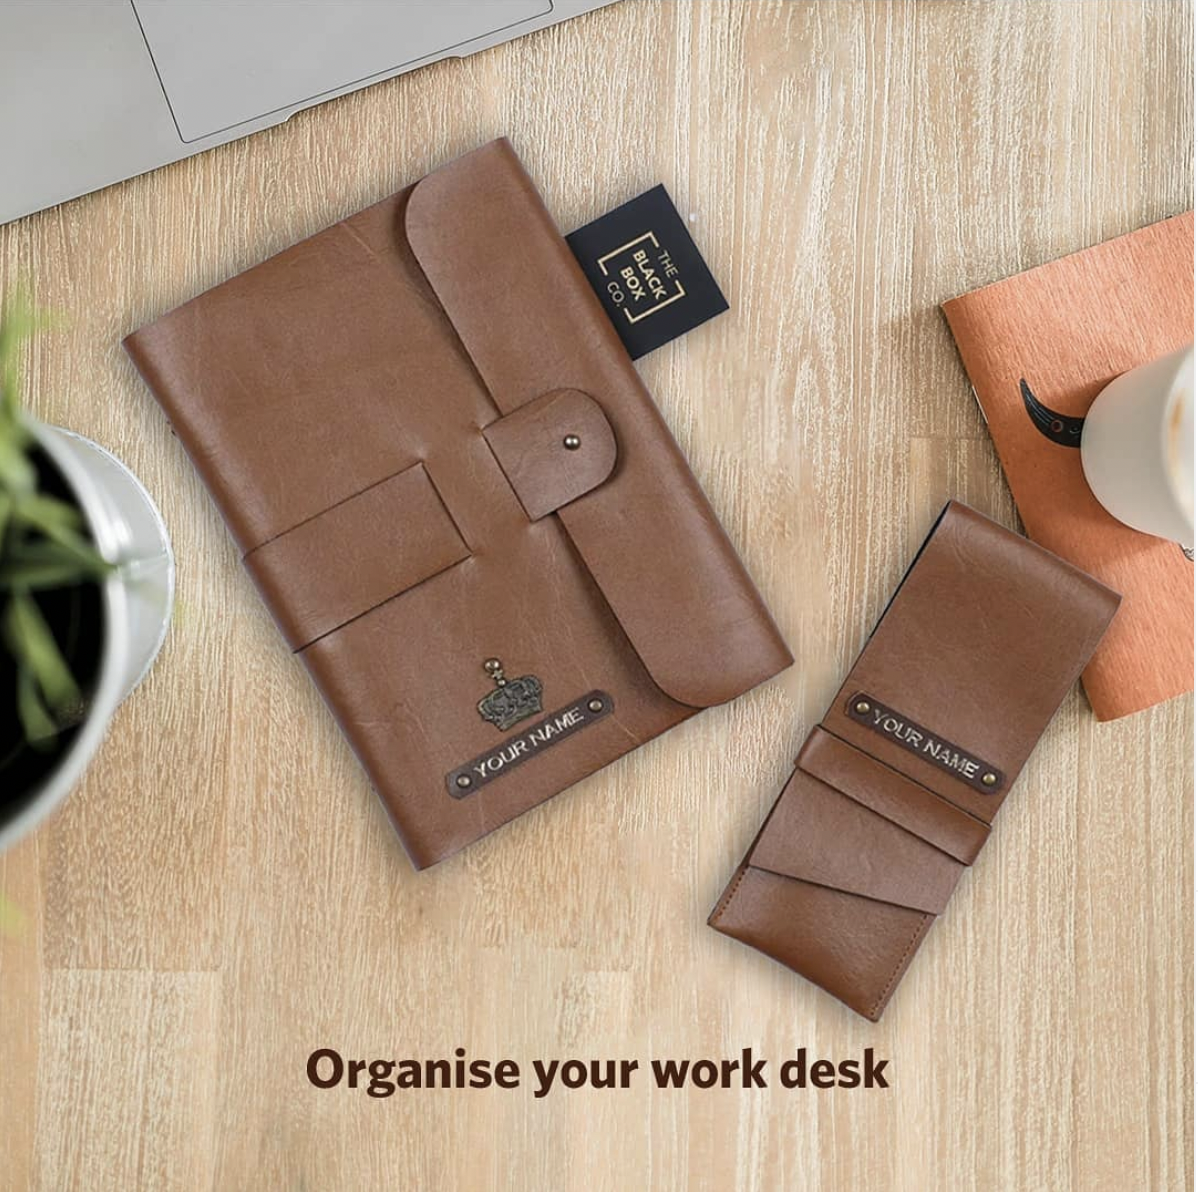 Organize your Work Desk